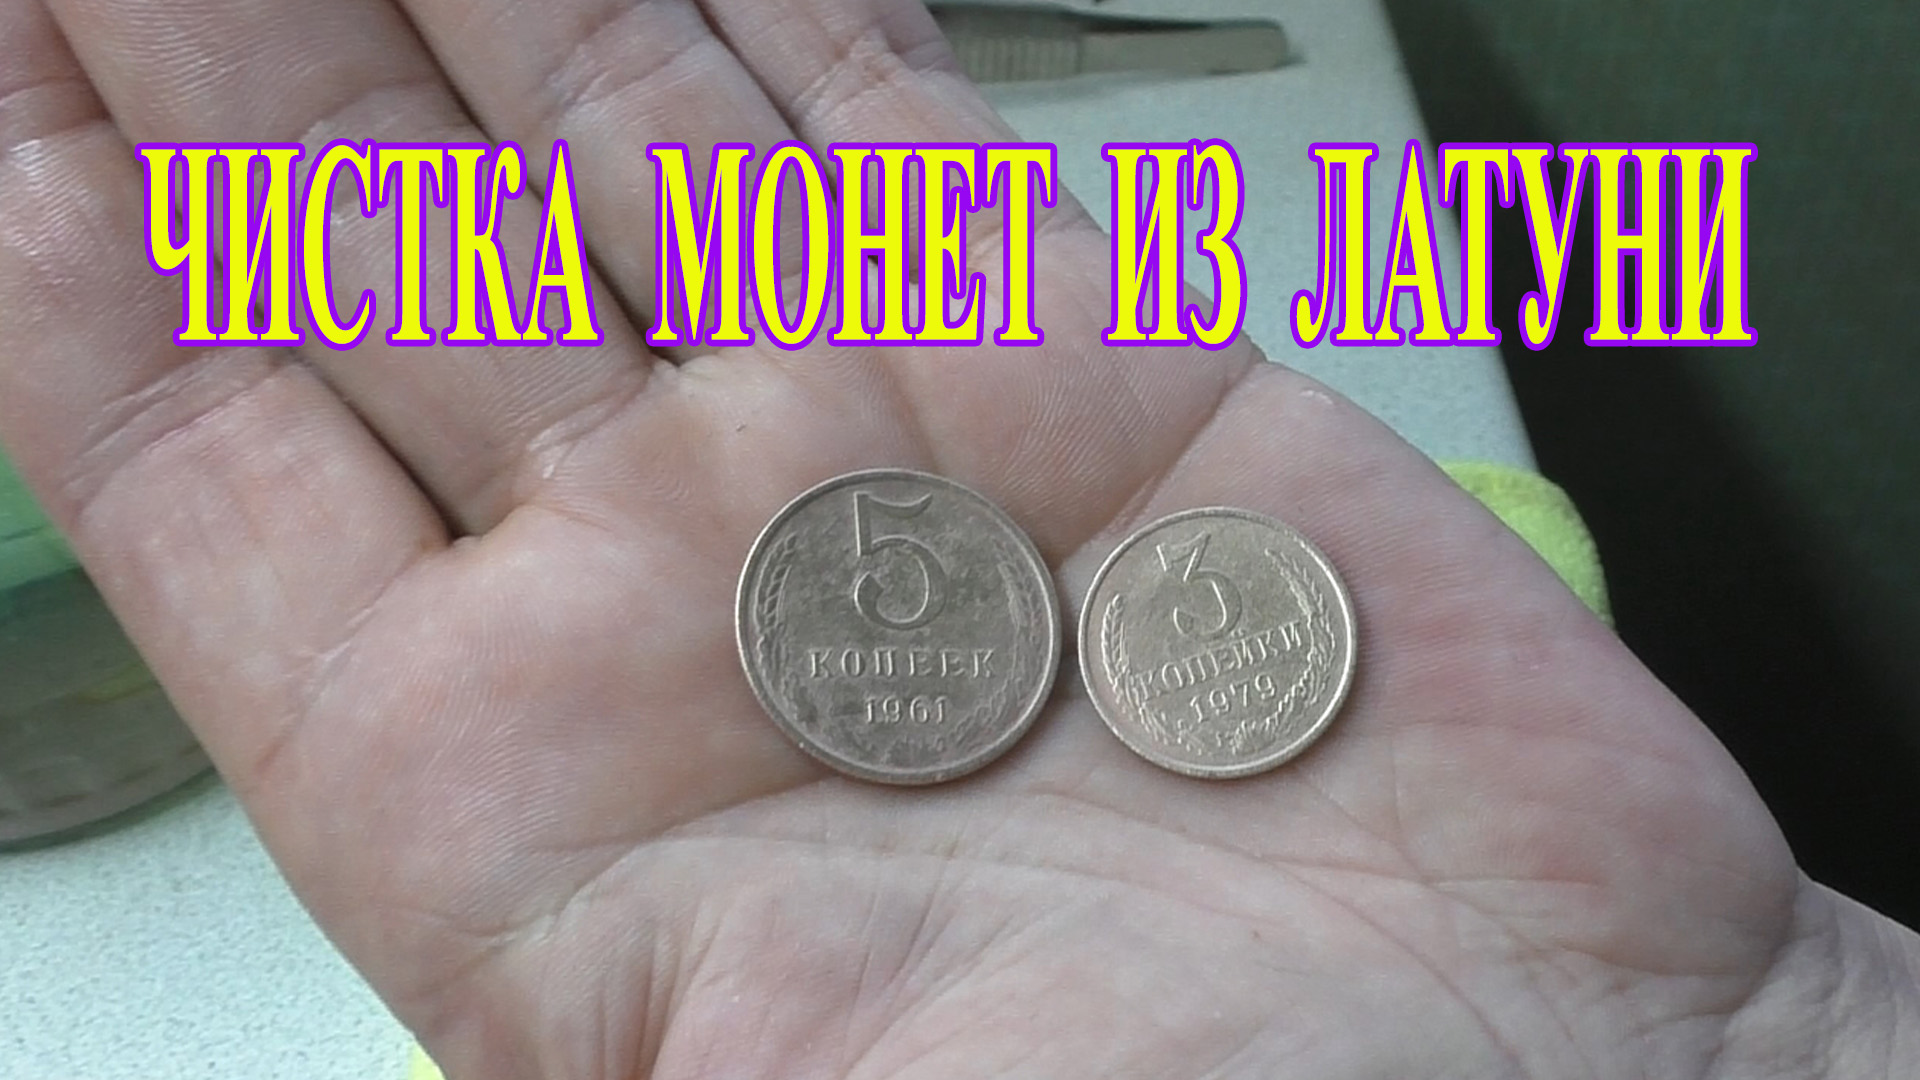 Супер средство, чистка монет из латуни (монеты СССР 1961-1991)